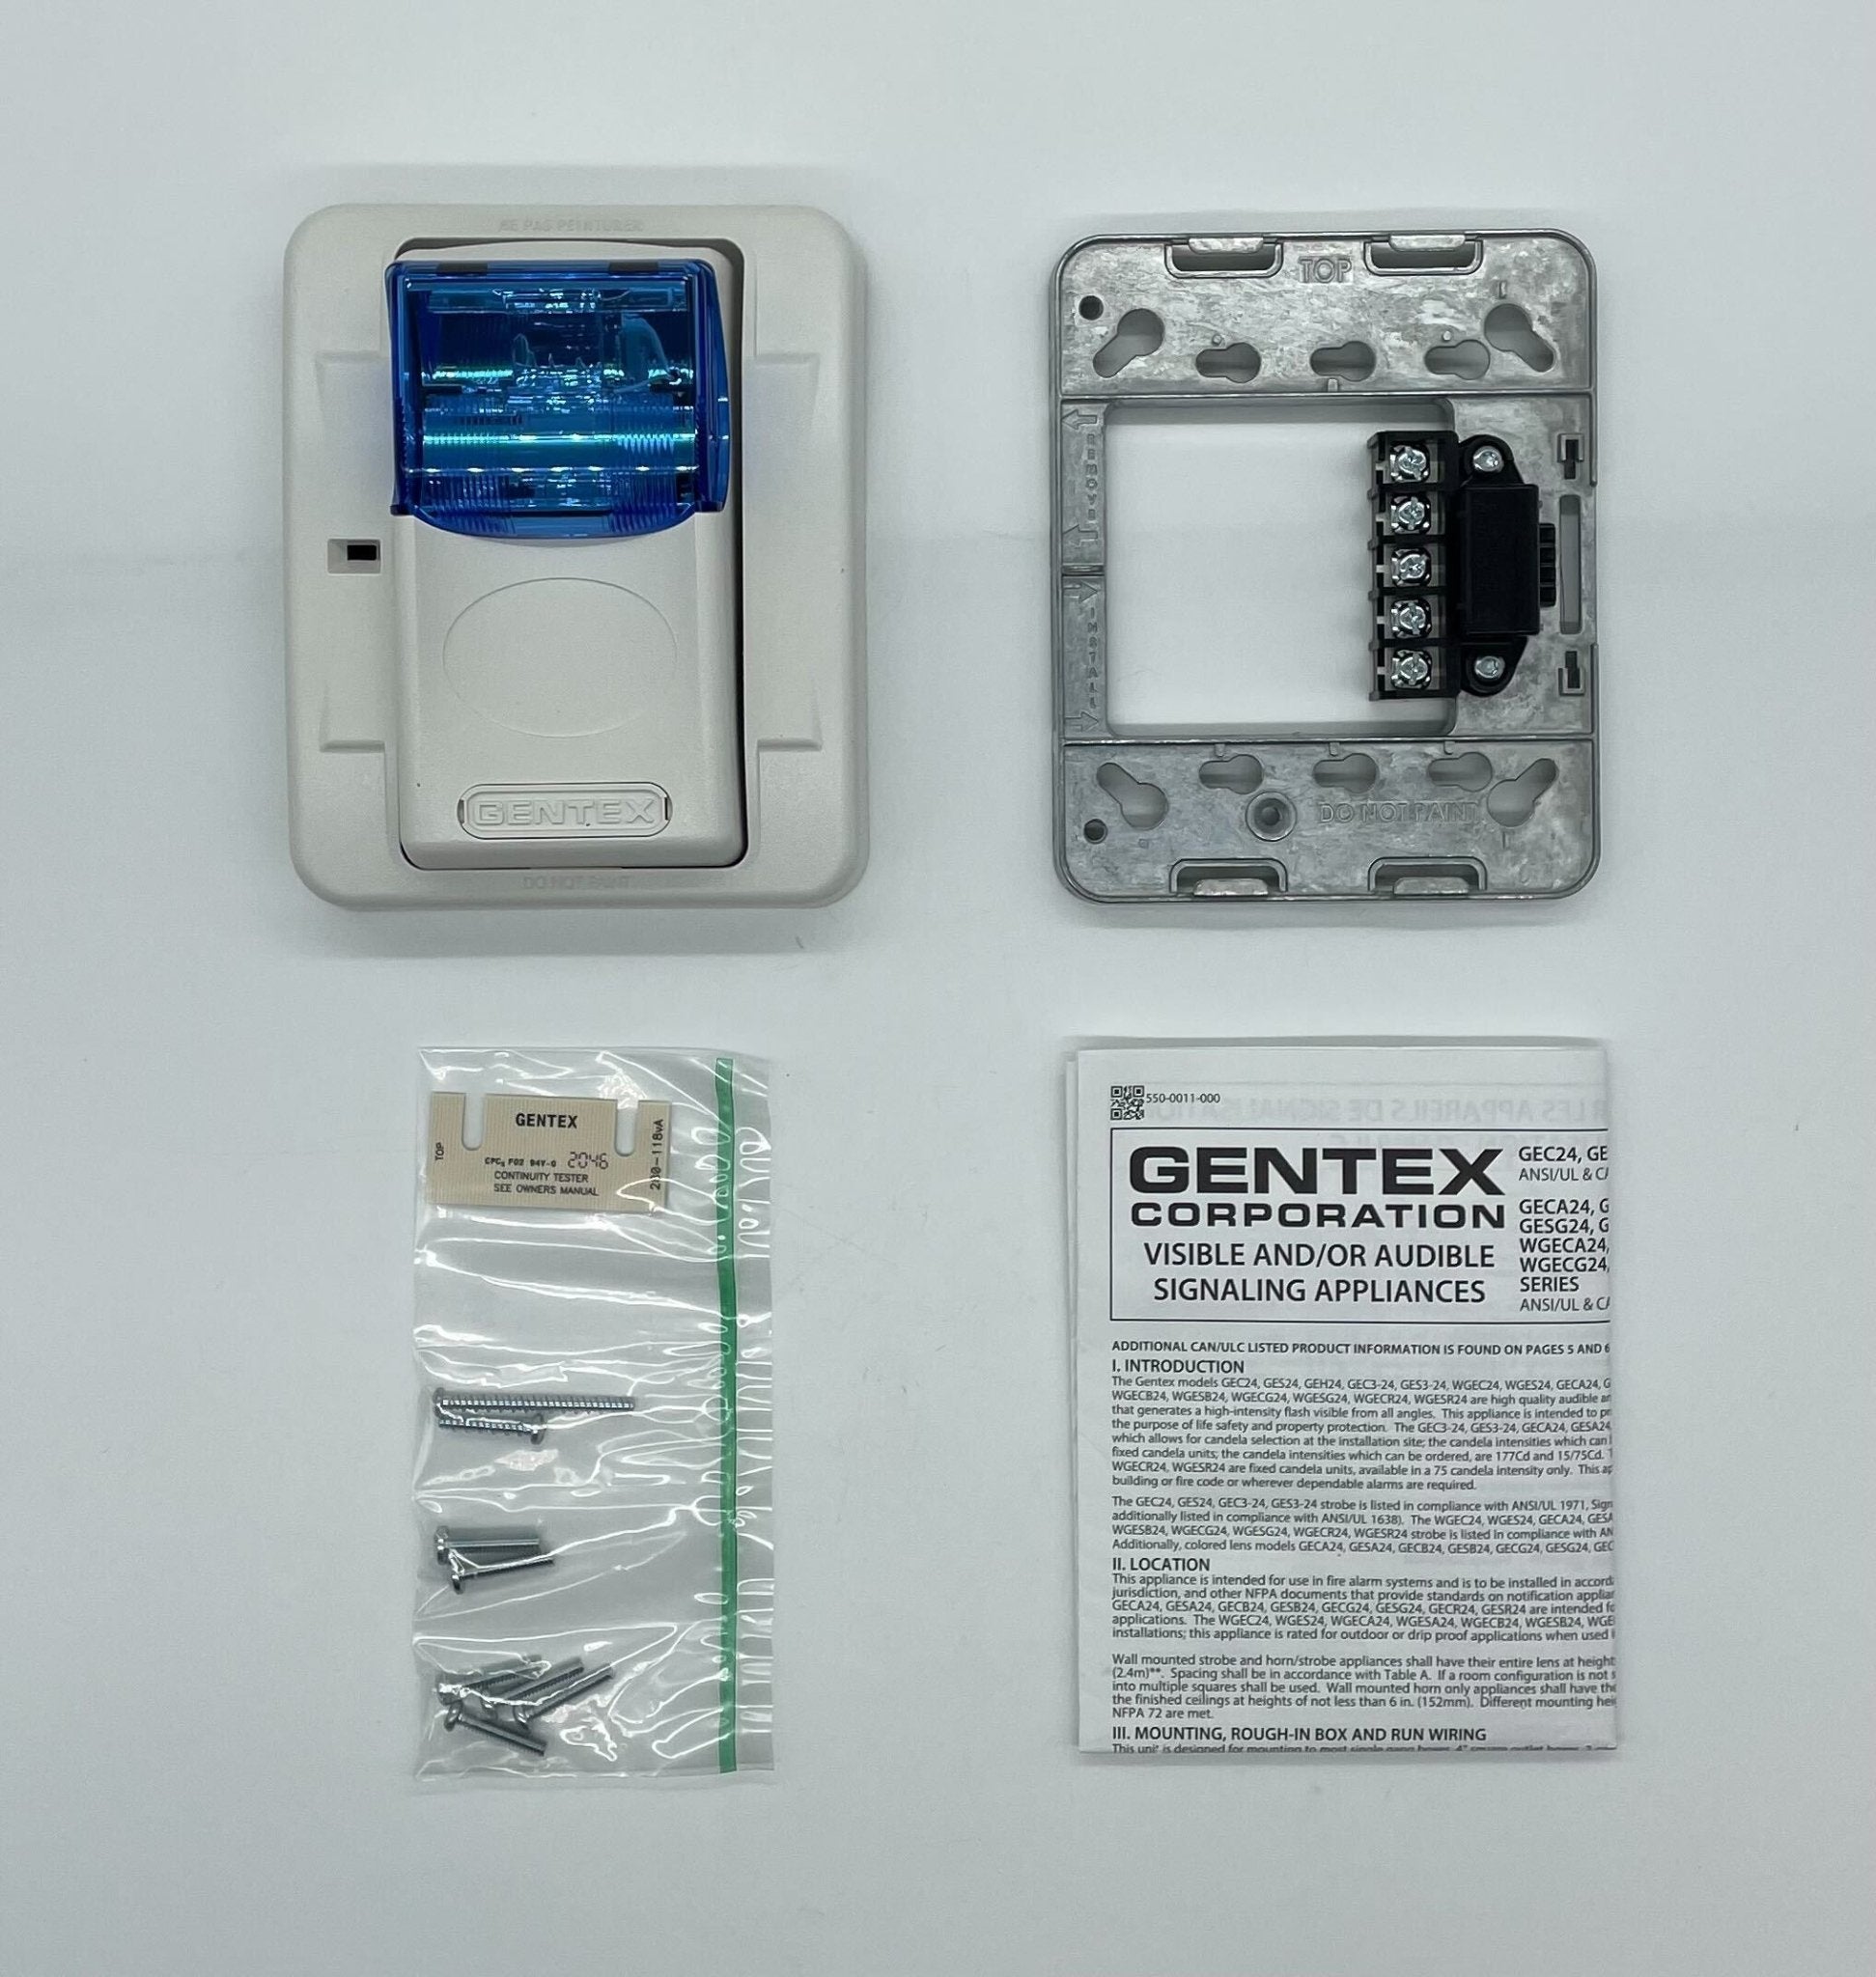 Gentex GESB24PWW - The Fire Alarm Supplier